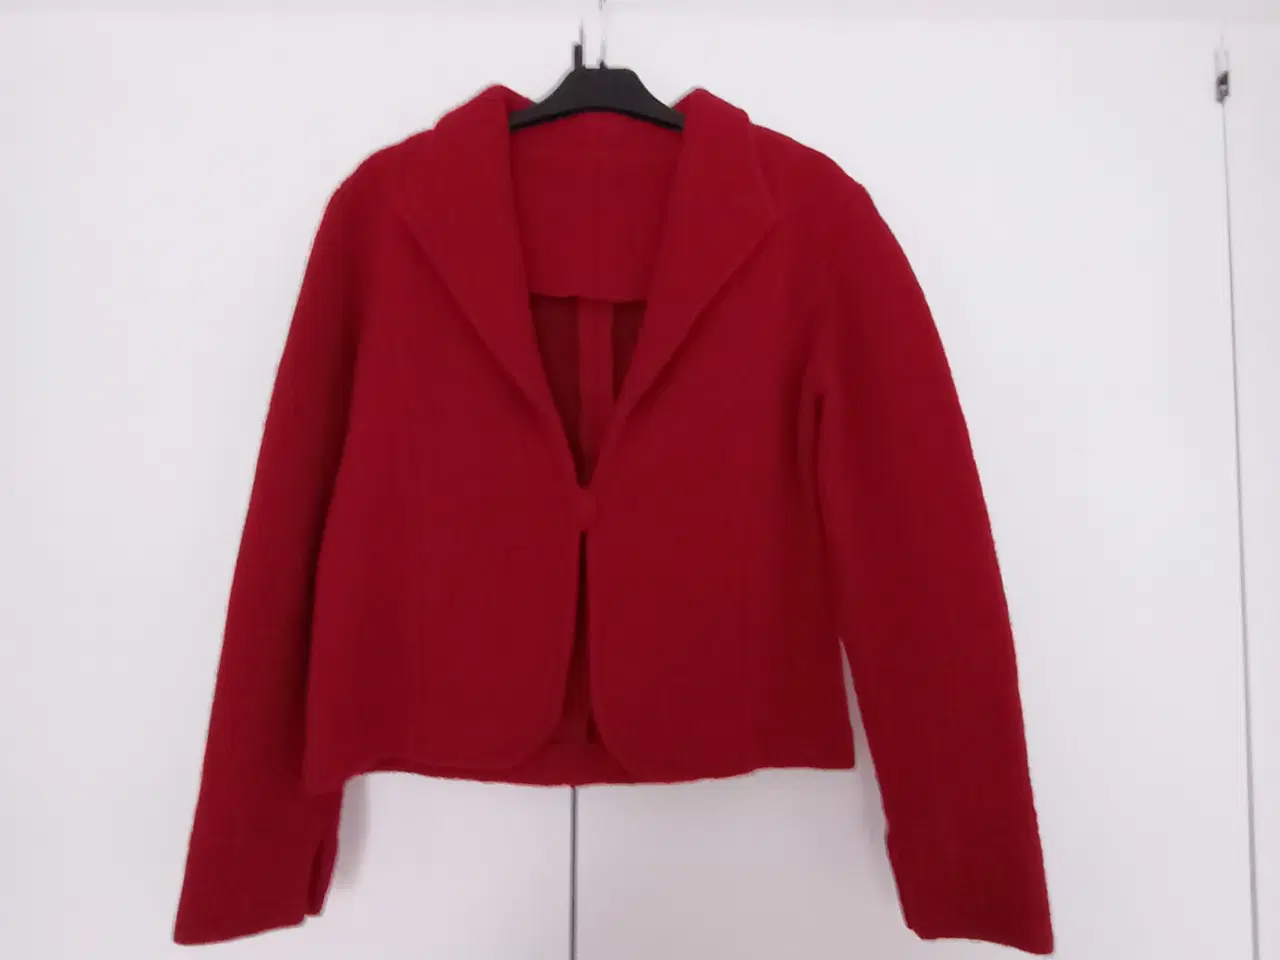 Billede 1 - Rød uld jakke med ærmeslidser. Str. 38